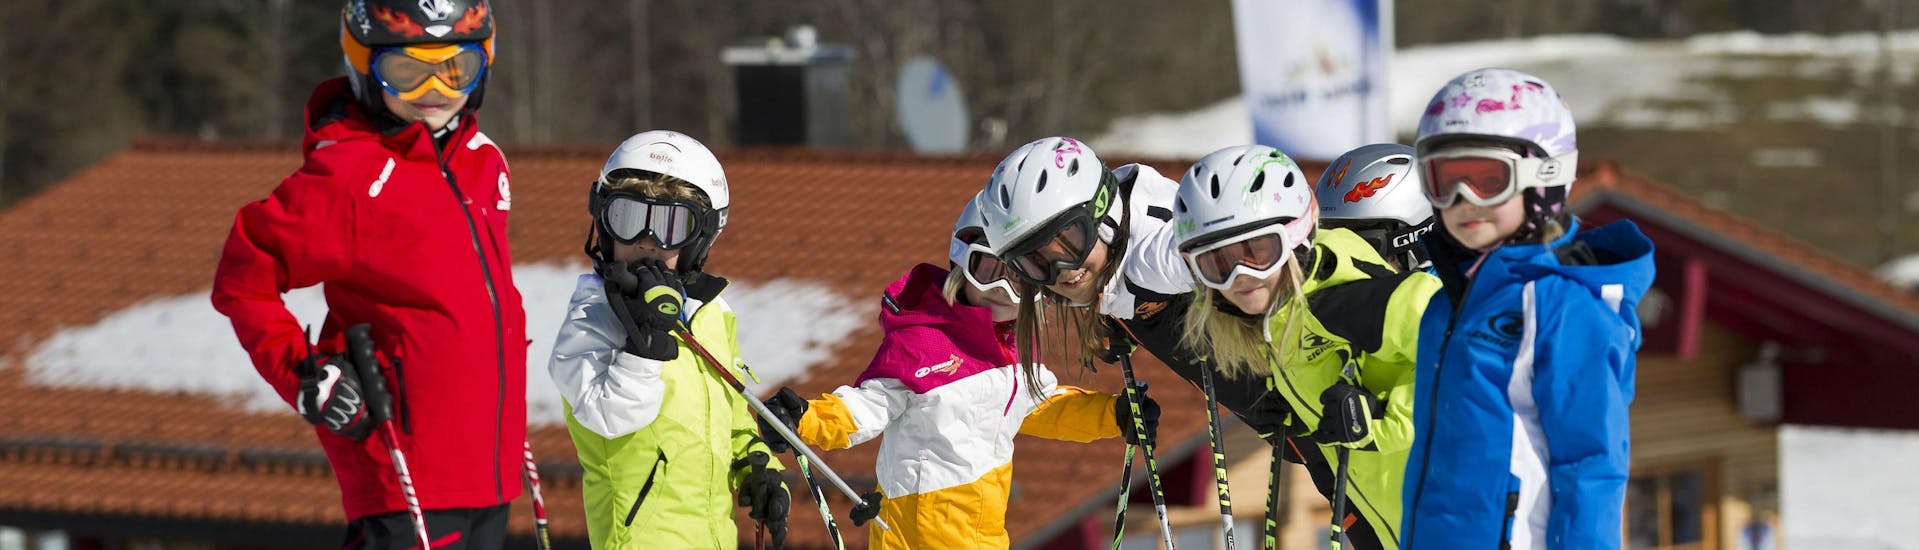 Privater Kinder-Skikurs für alle Levels.